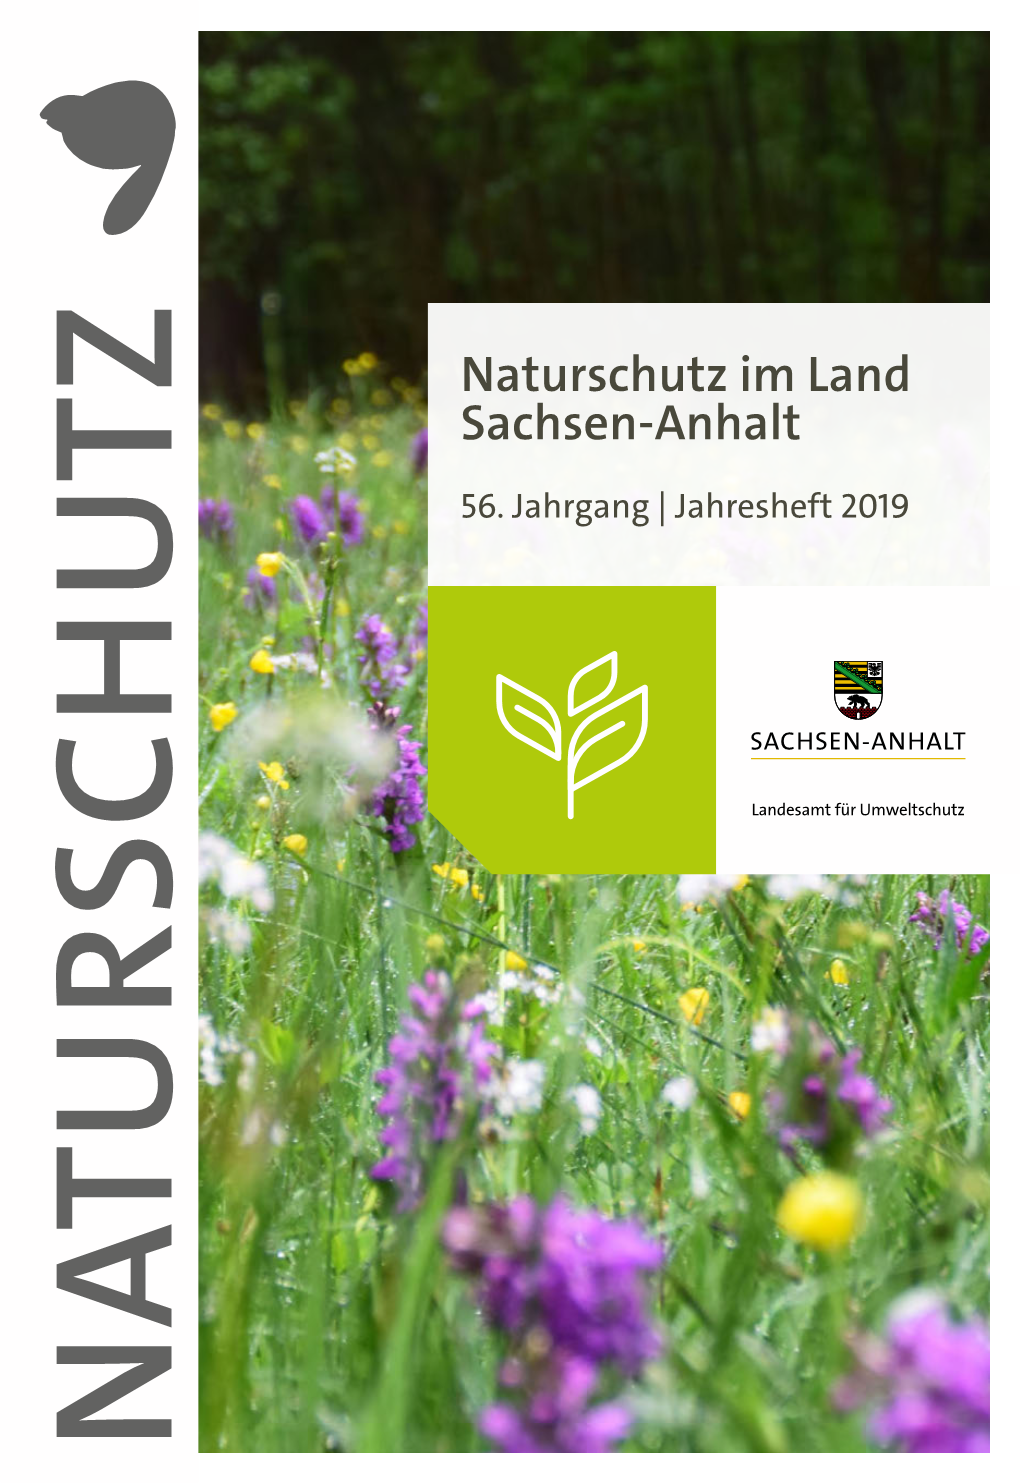 Naturschutz Im Land Sachsen-Anhalt, Jahresheft 2019